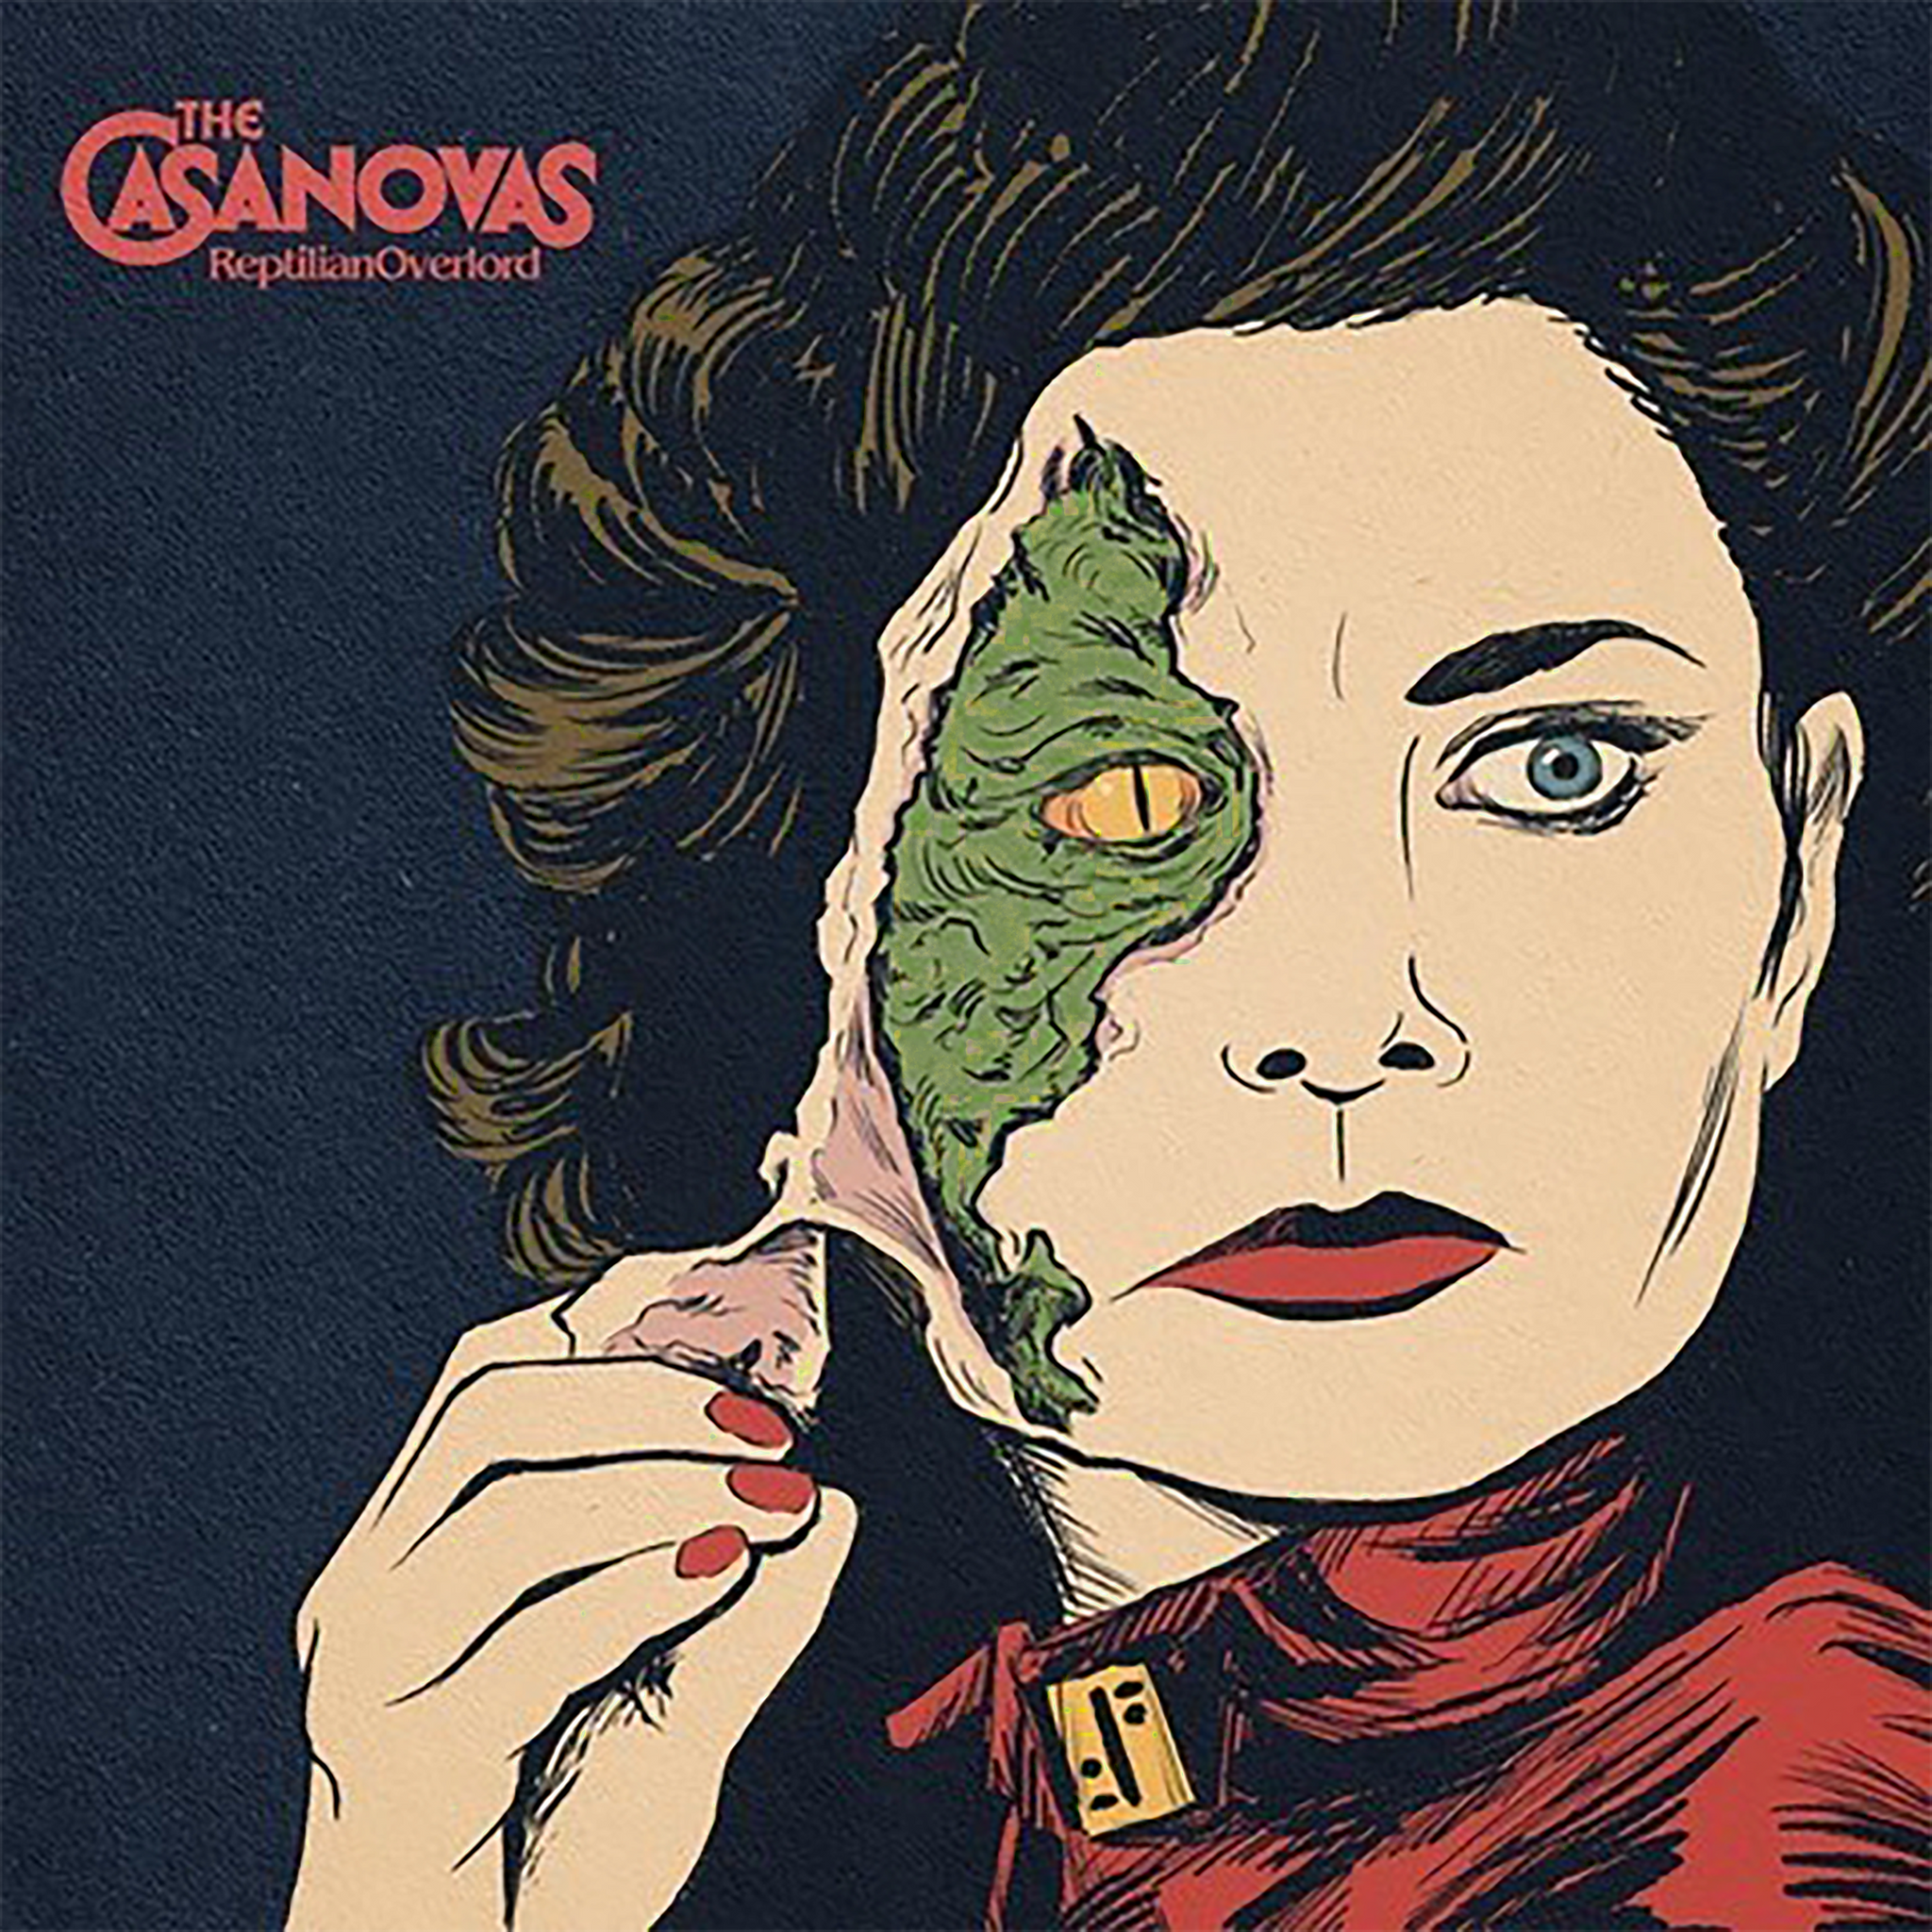 The Casanovas - Reptilian Overlord (CD)